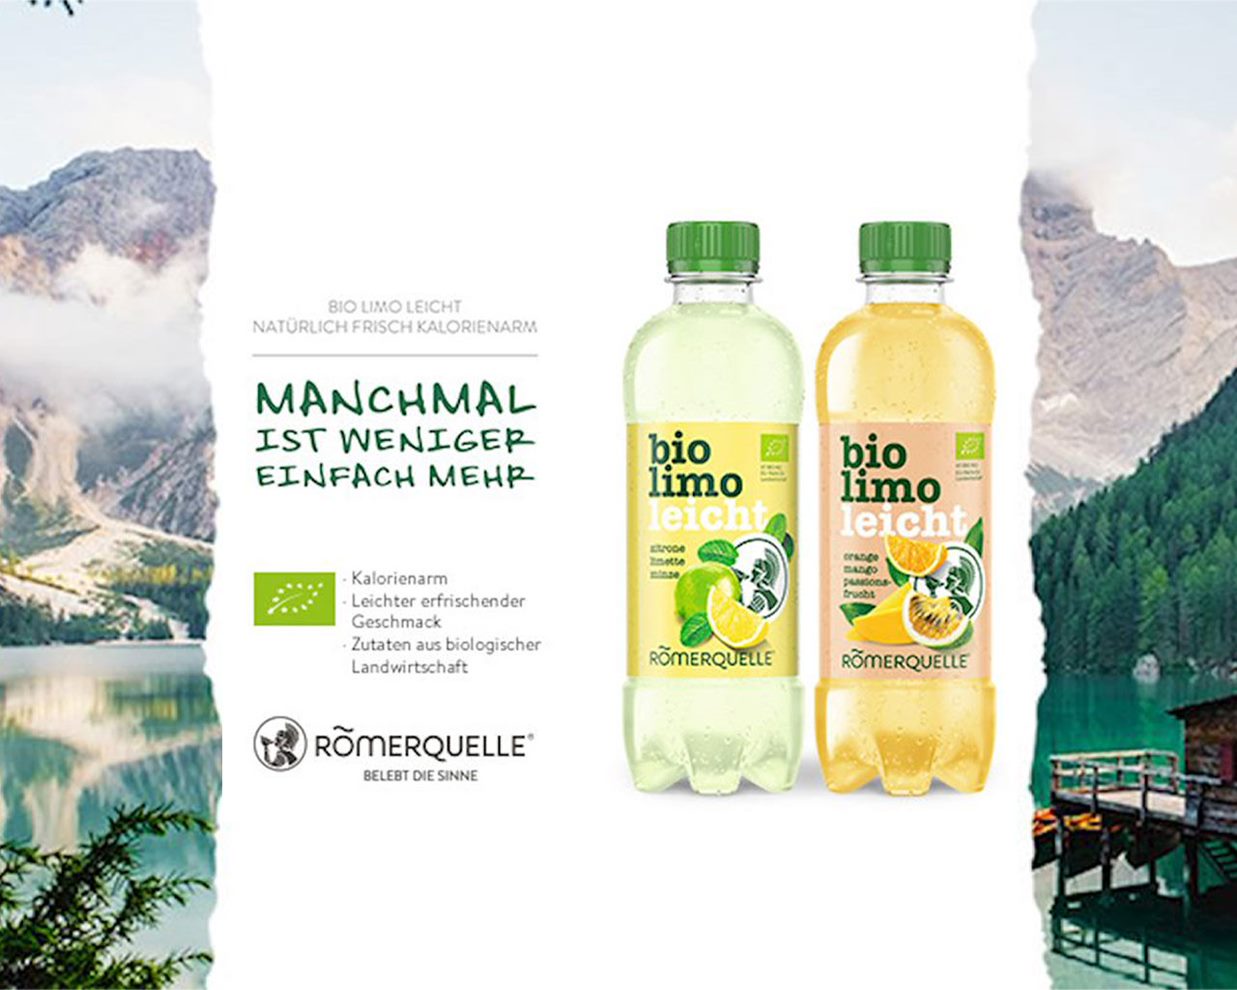 Zwei Flaschen Bio Limo Leicht in zwei Geschmacksvarianten. Links unten das Römerquelle-Logo und der Spruch „Belebt die Sinne“. In der linken Bildhälfte der Text „Manchmal ist weniger mehr – Bio Limo Leicht – Natürlich, frisch, kalorienarm“.